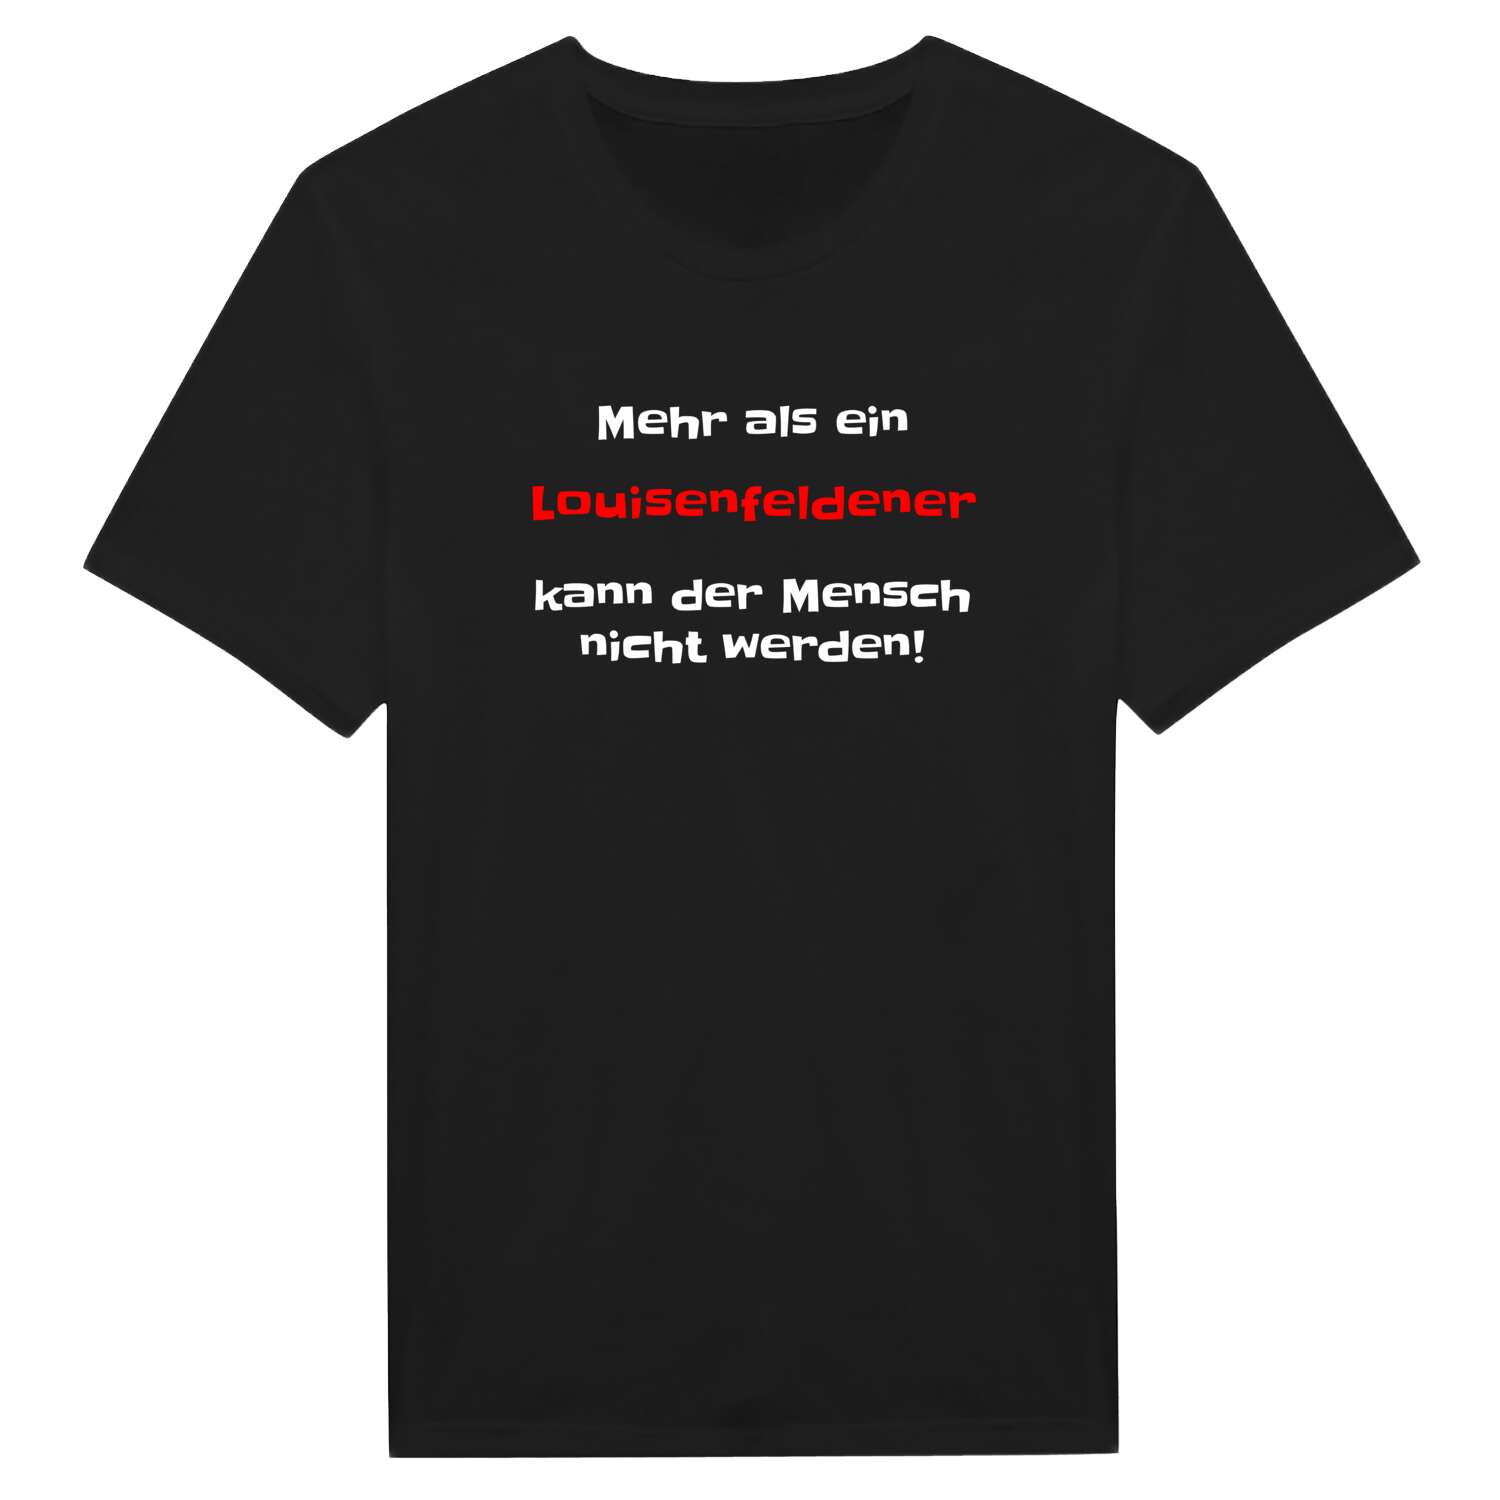 Louisenfelde T-Shirt »Mehr als ein«